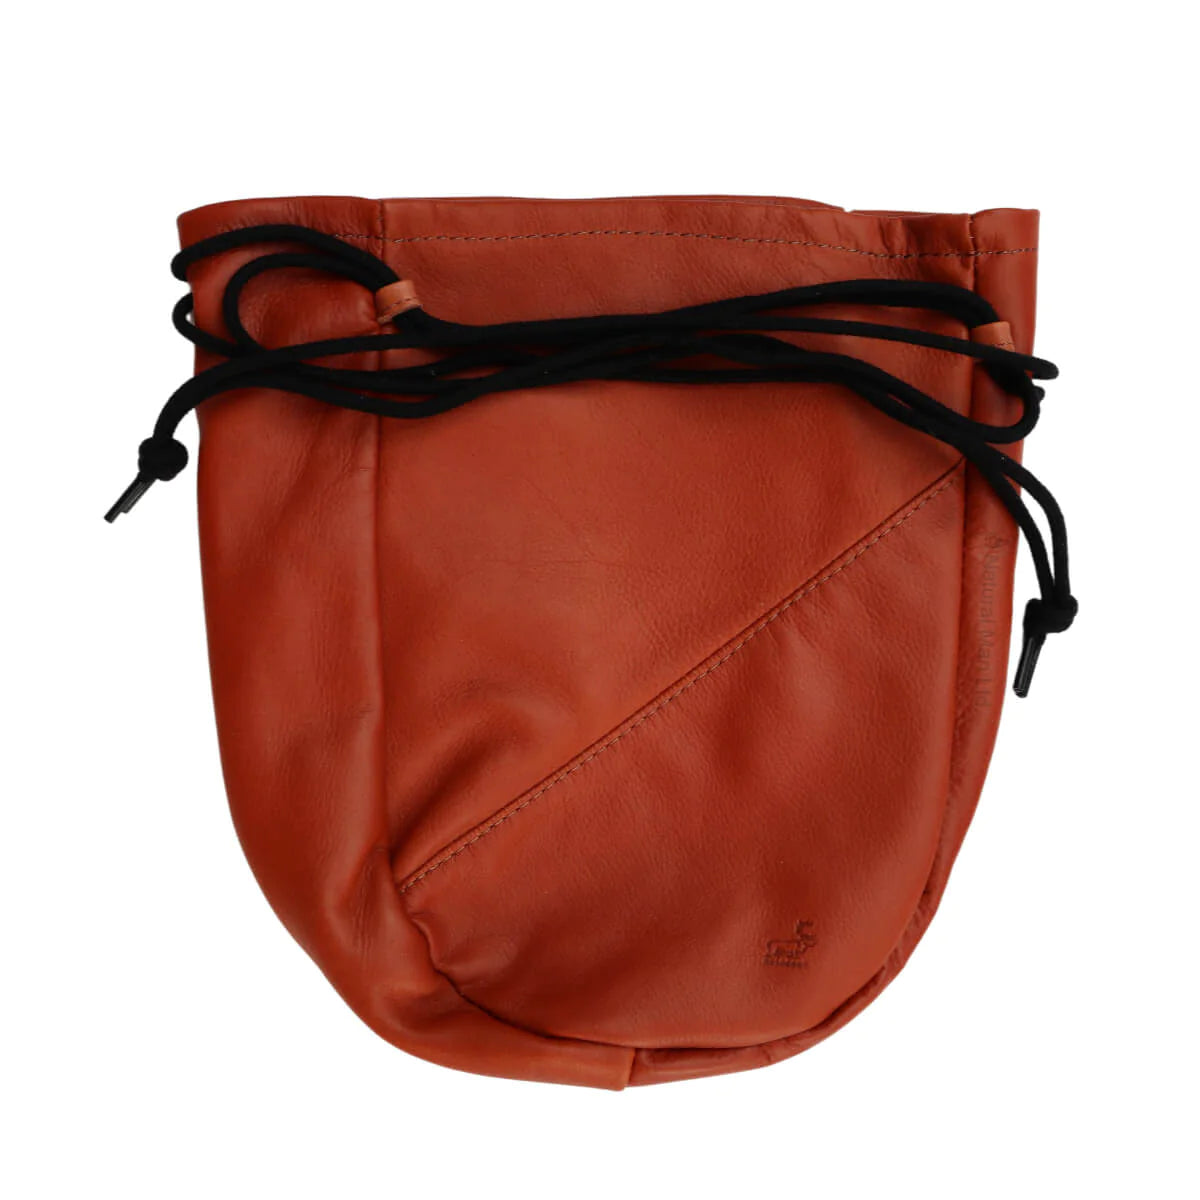 Reindeer leather Storage Bag